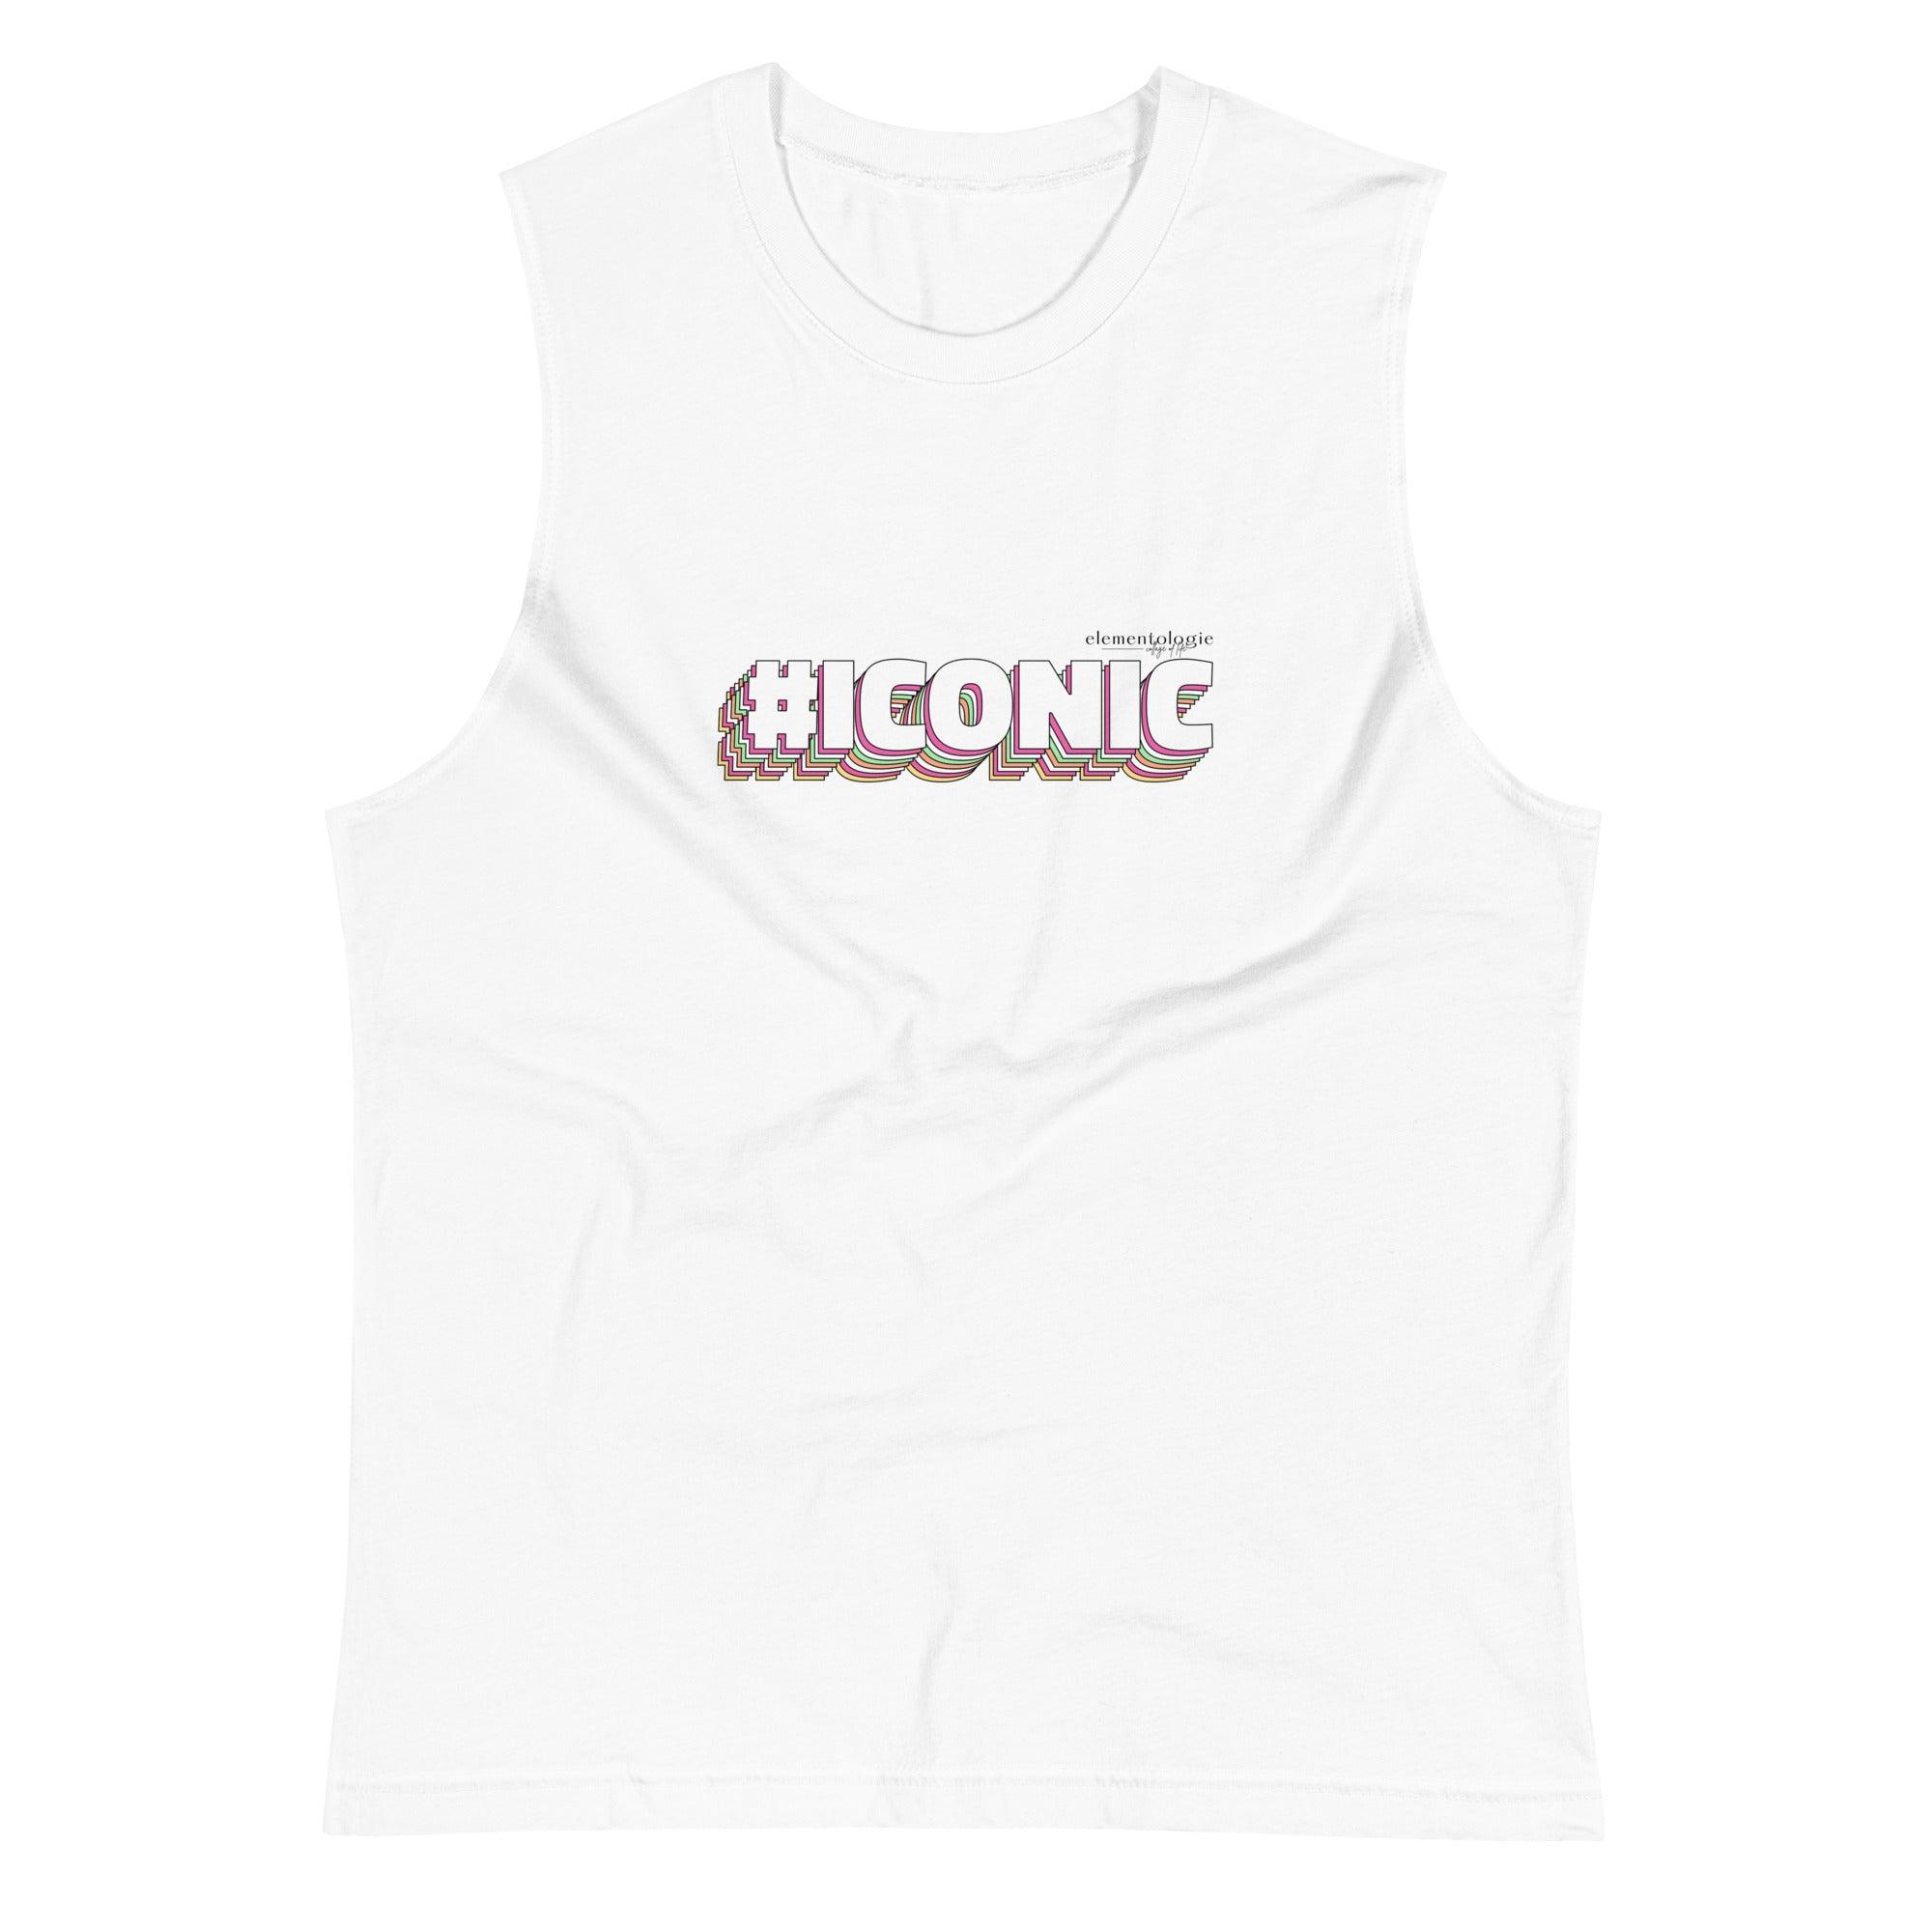 Unisex Muscle Shirt-#Iconic - Elementologie